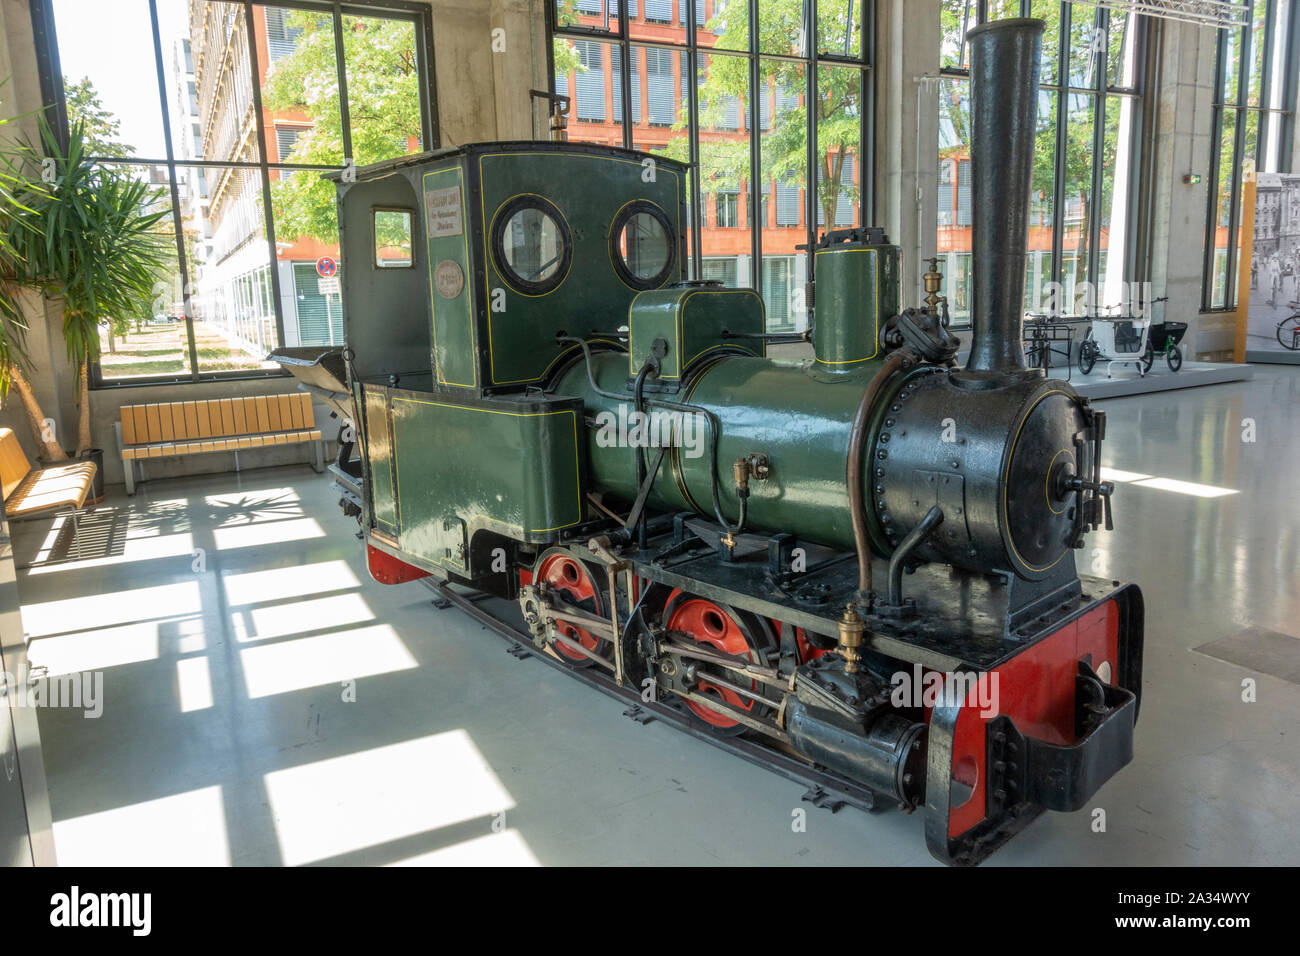 Eine Light Railway Dampflokomotive von Krauss & Companie (1903) im Deutschen Museum Verkehrszentrum (Deutsch Transport Museum), München, Deutschland. Stockfoto